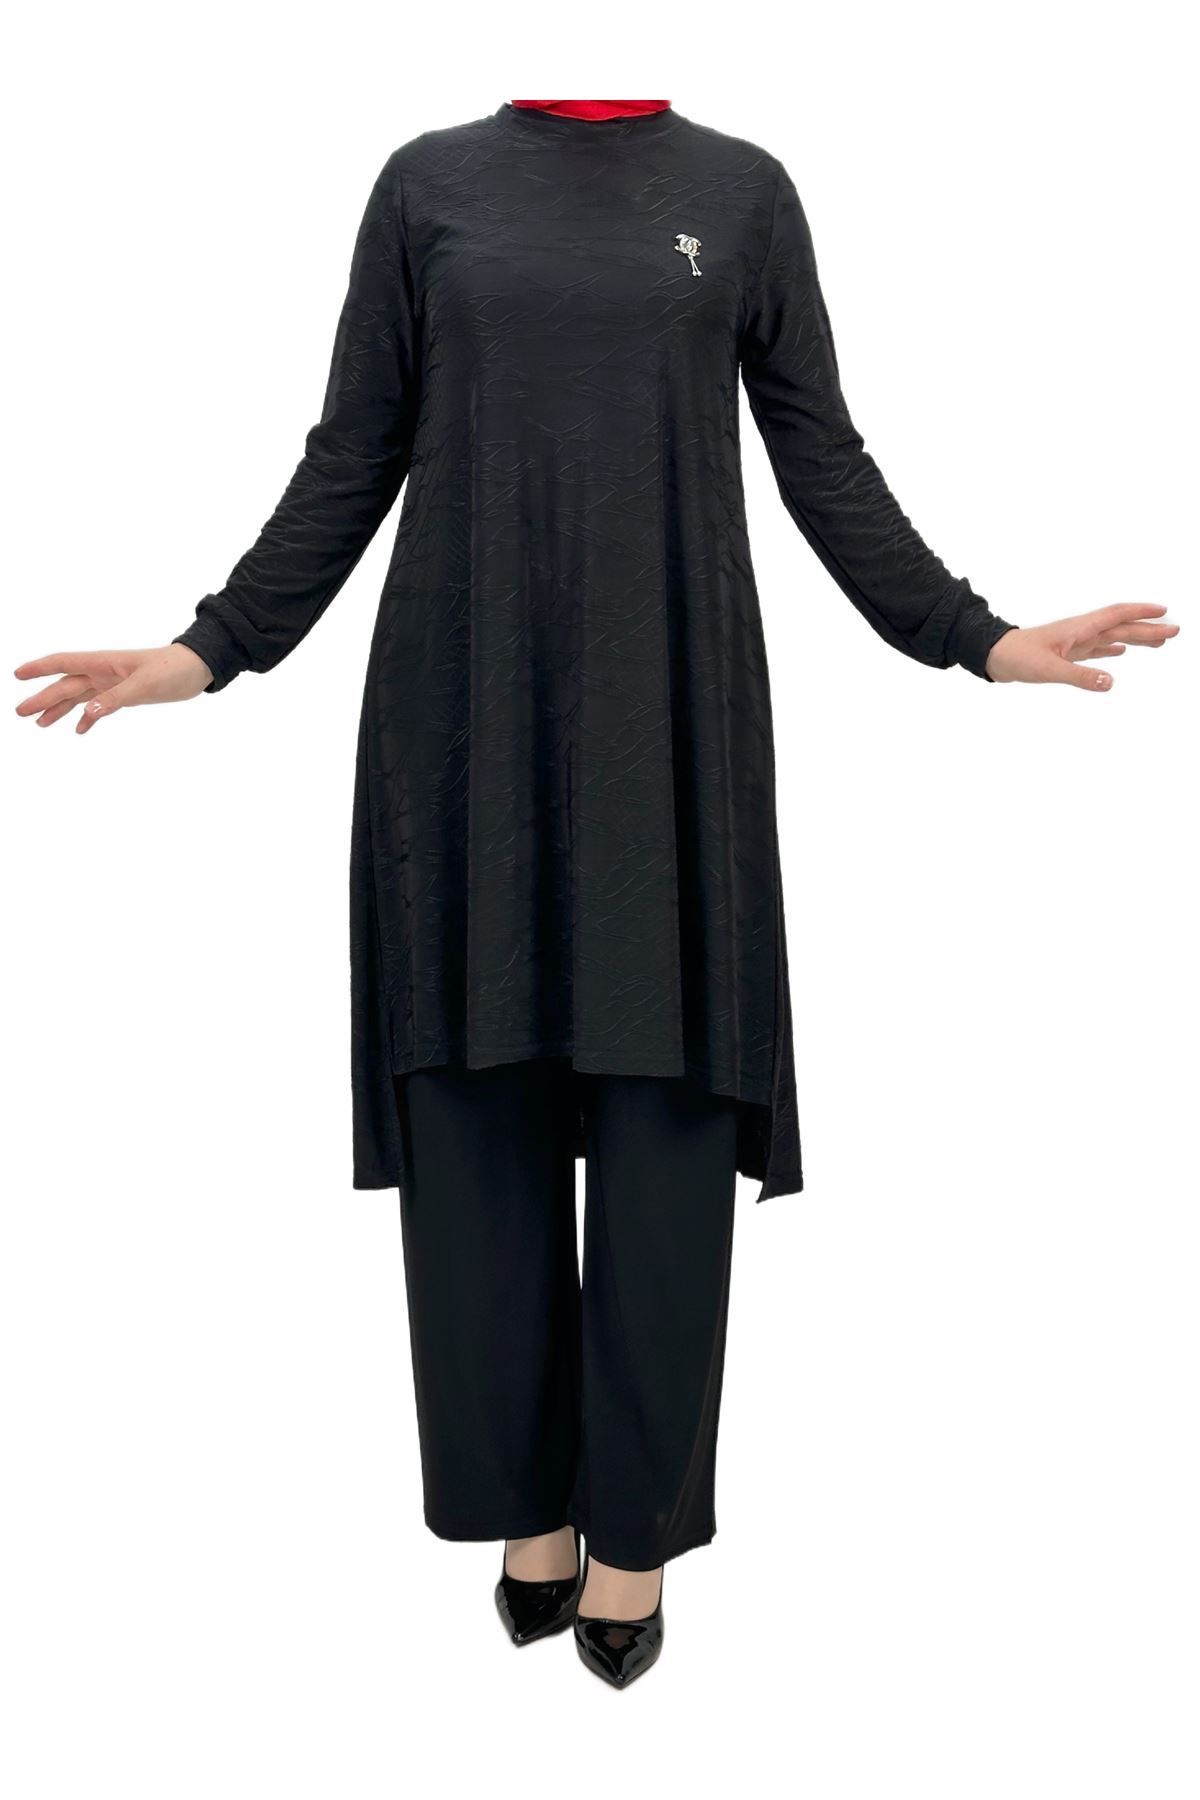 ottoman wear OTW401 Kendinden Kabartmalı Takım Siyah